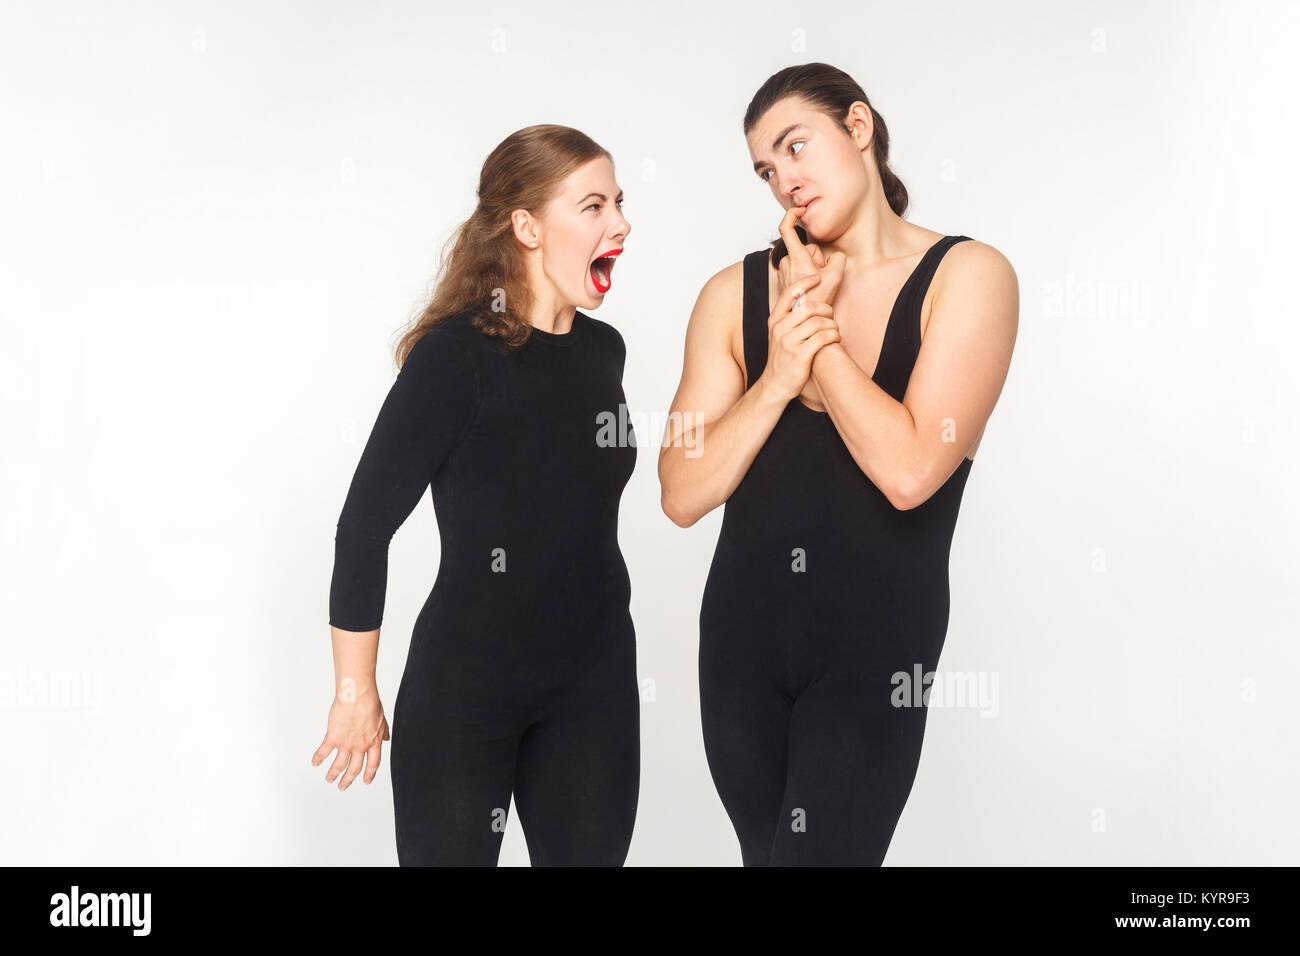 Frau wütend und brüllen bei man. Menschen haben ein lustig aussehen. Studio shot, auf weißem Hintergrund Stockfoto